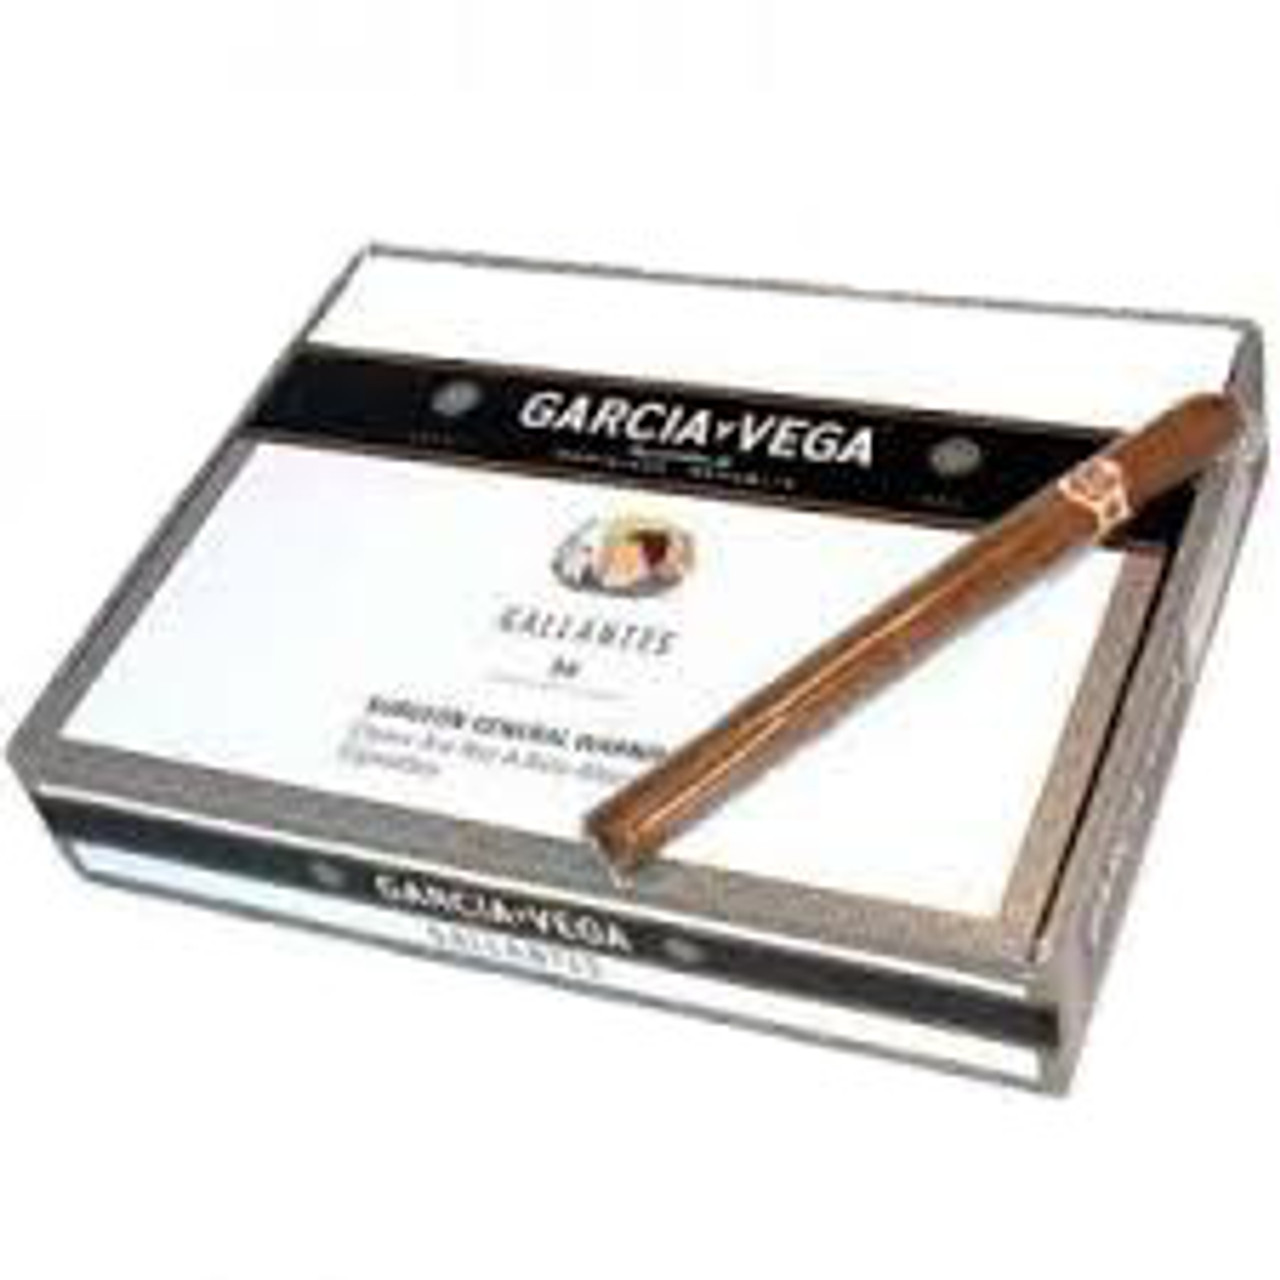 Garcia Y Vega Gallante Cigars (Box of 50) - Natural